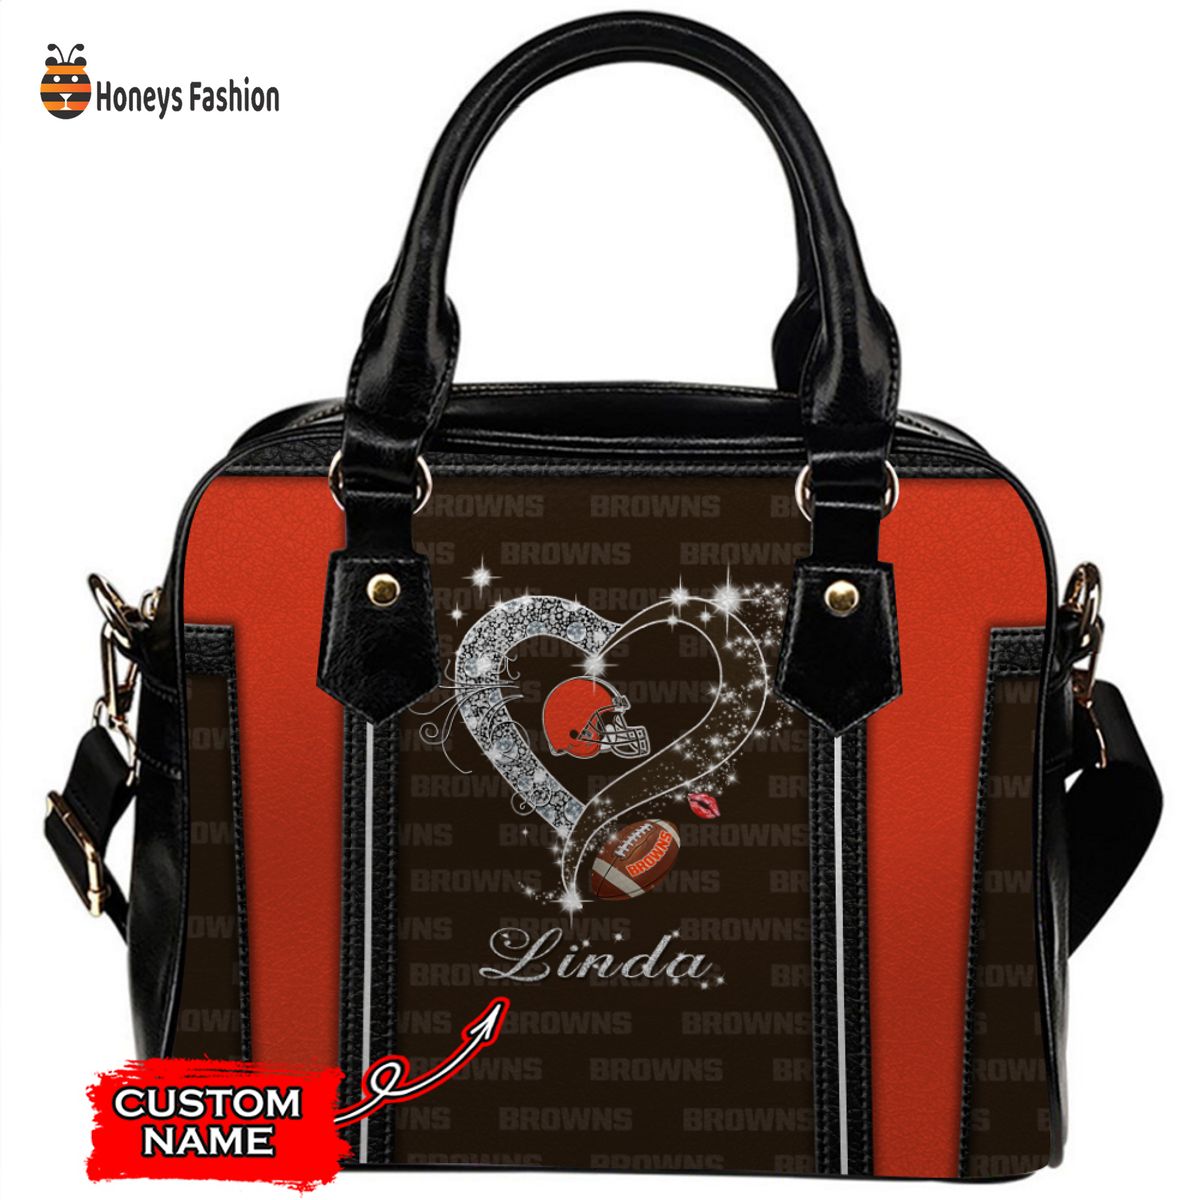 Cleveland Browns NFL Custom Name Leather Handbag Tote bag